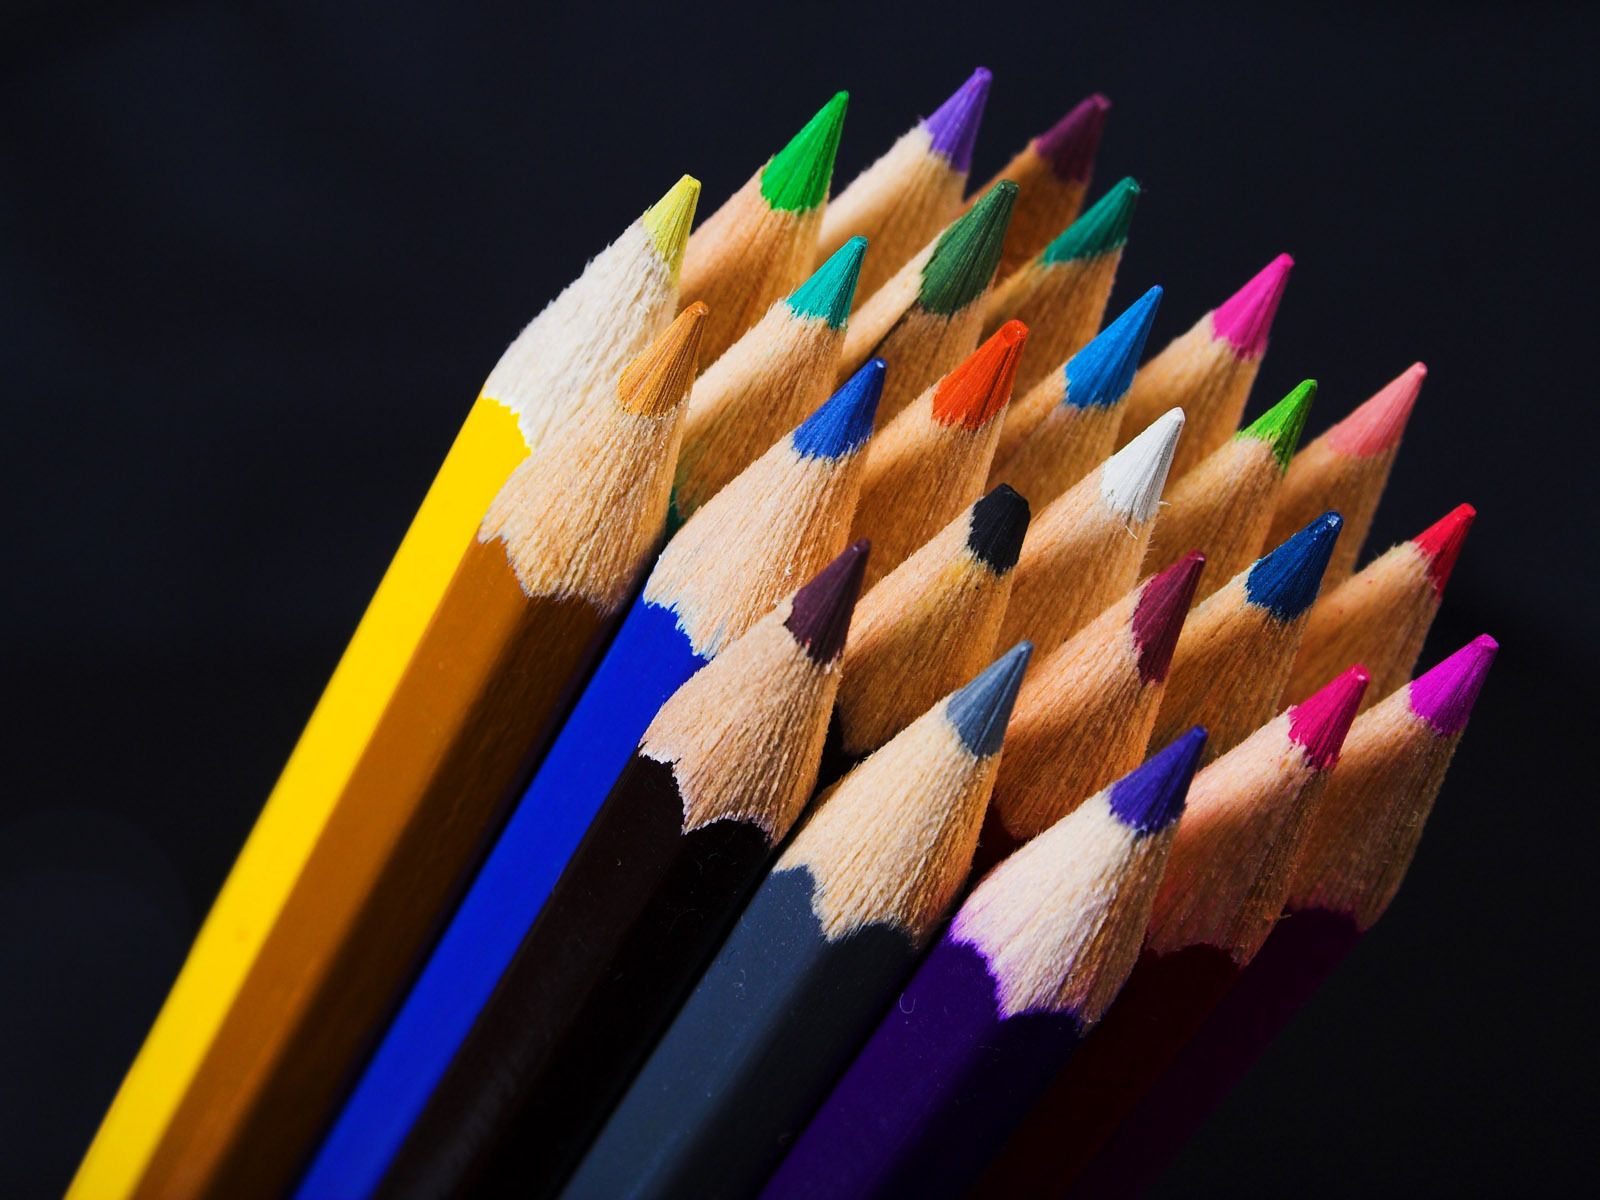 Colored pencils - Pencils Wallpaper (22186696) - Fanpop